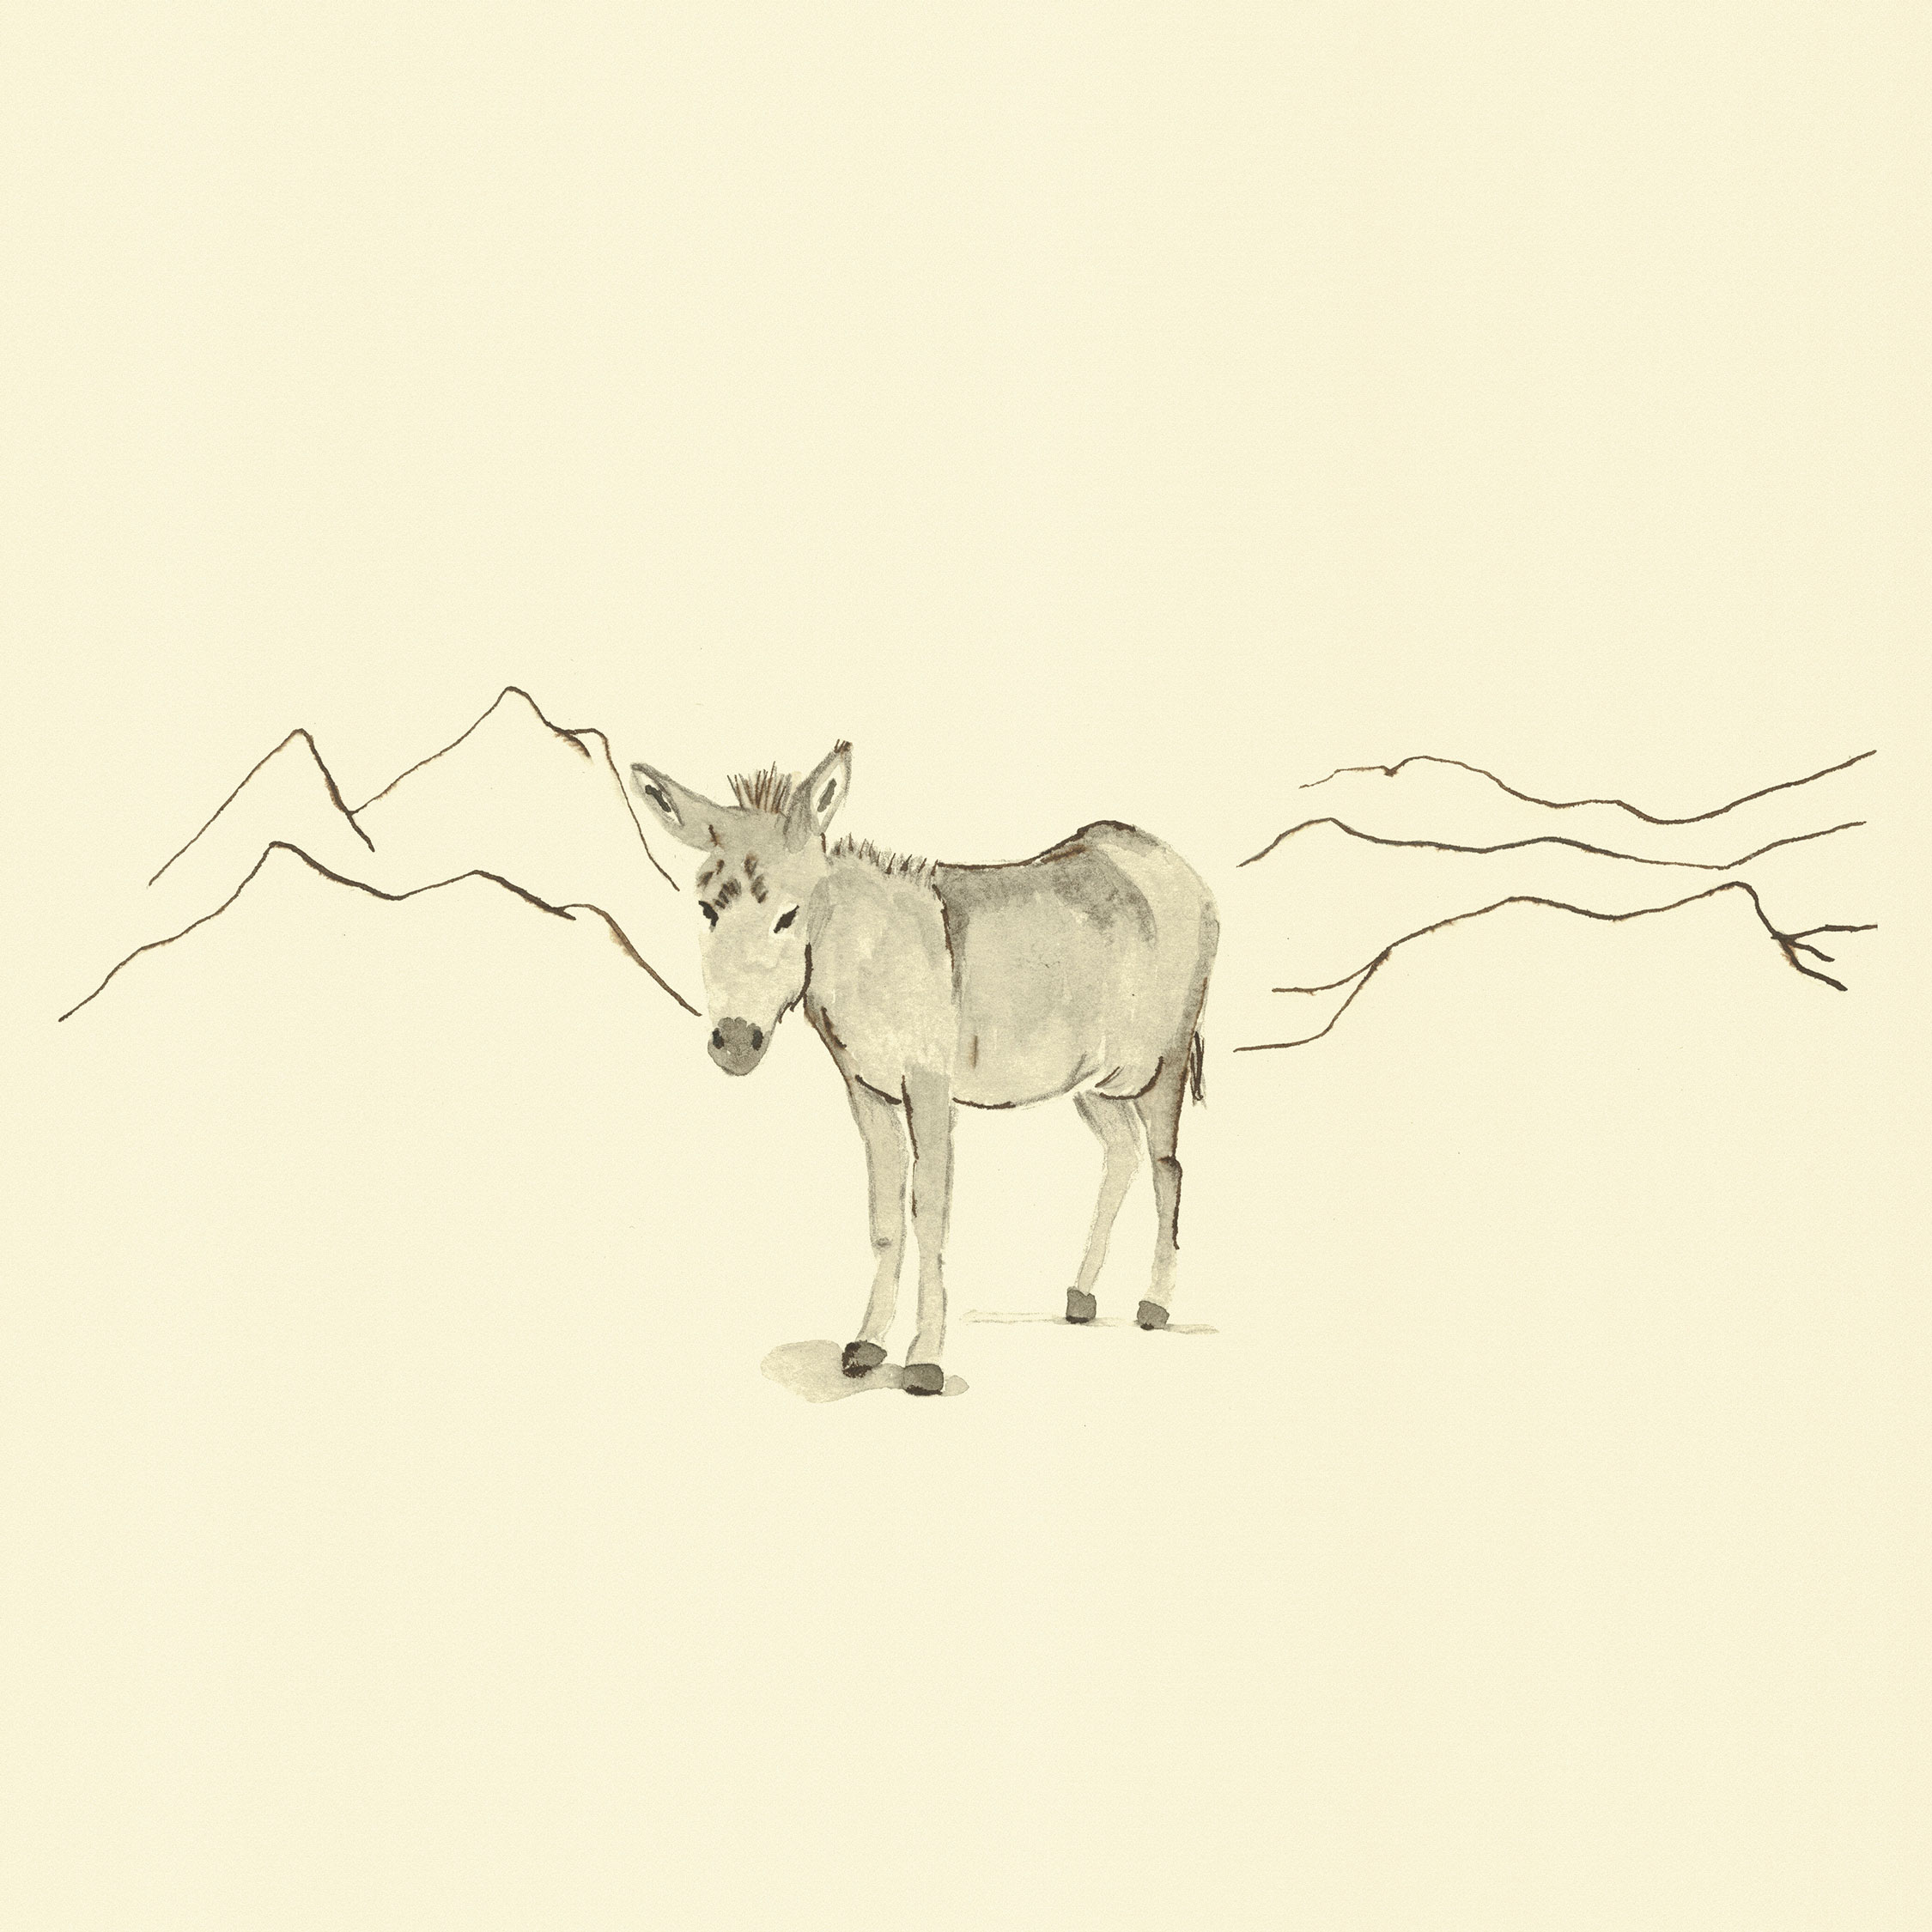 Eine Illustration mit Aquarell und Tusche mit dem Titel 'Esel'.